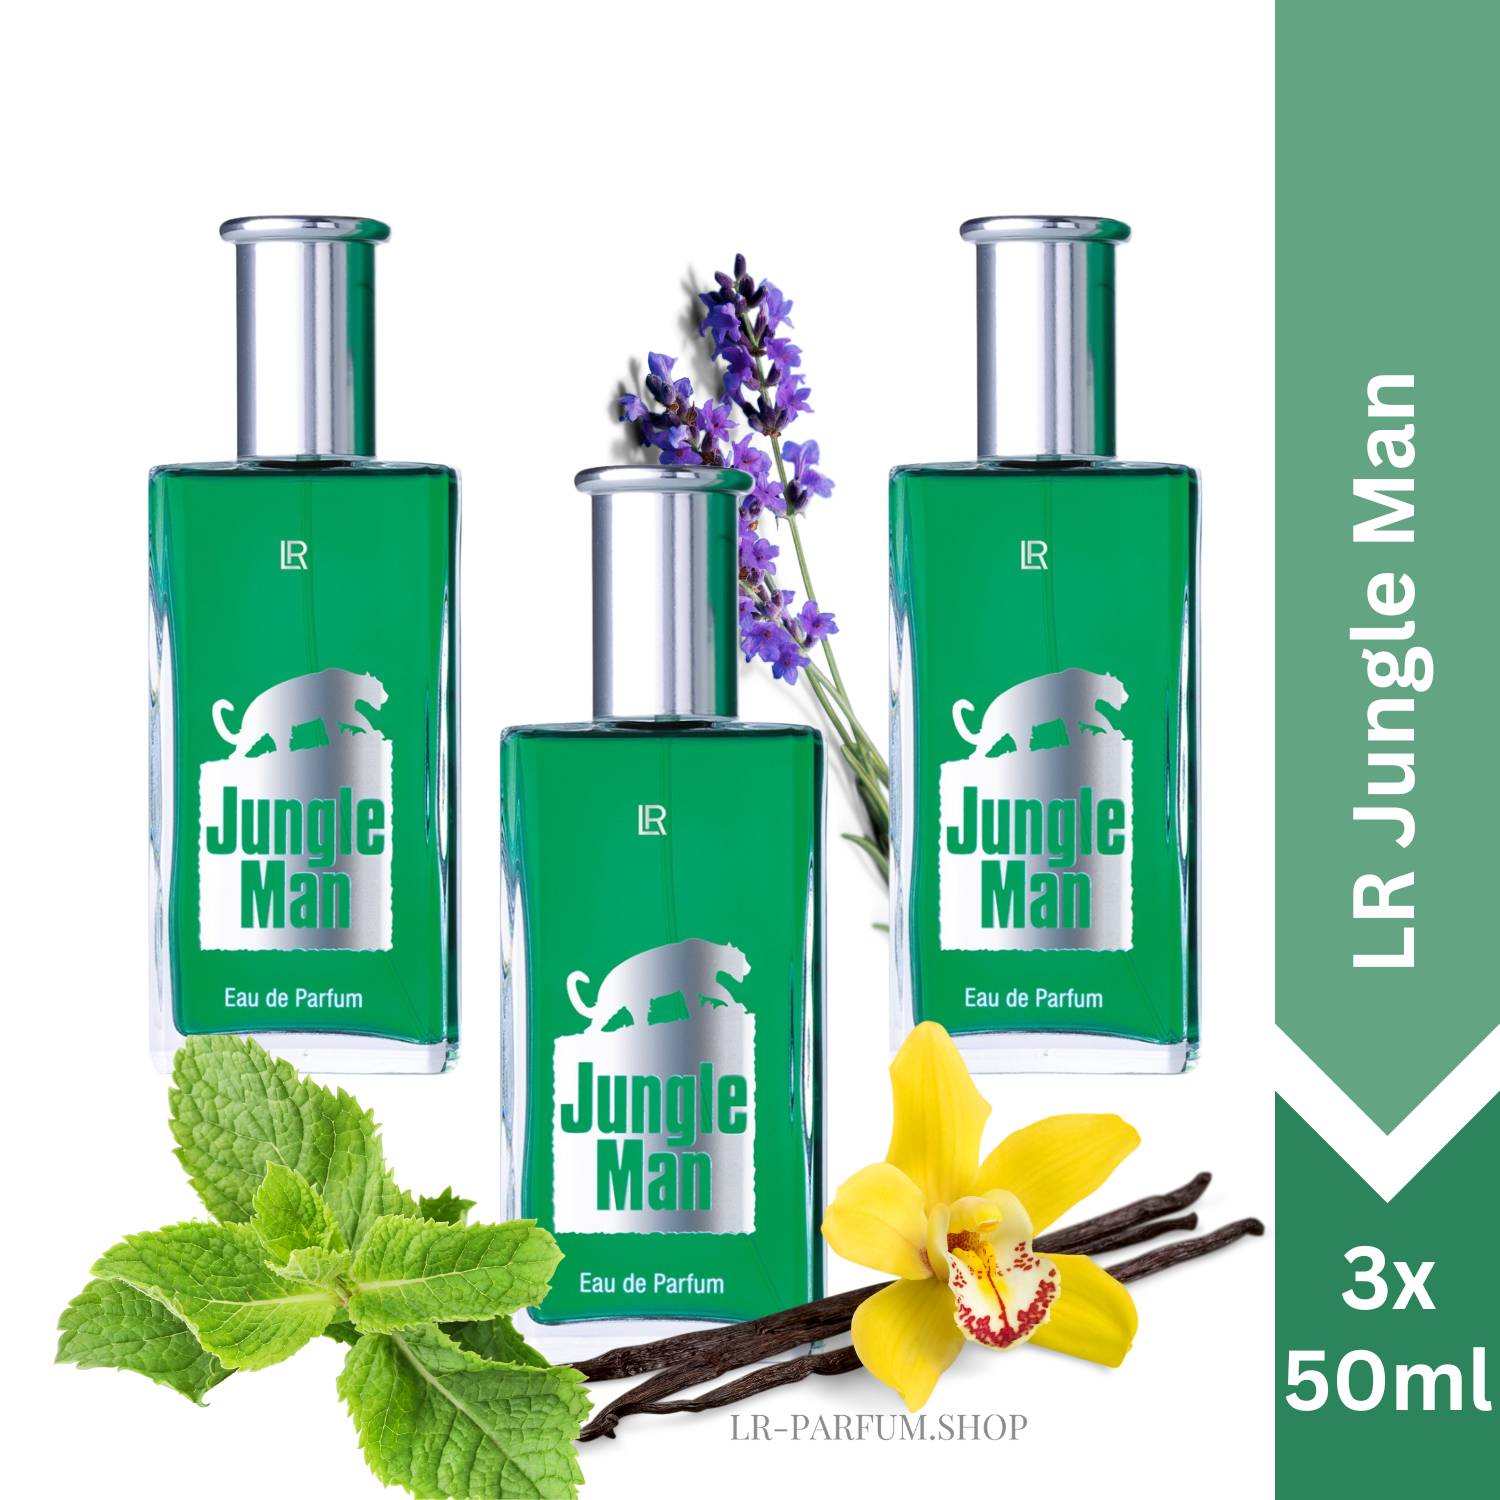 LR Jungle Man - Eau de Parfum, 3er Pack (3x50ml) - LR-Parfum.shop